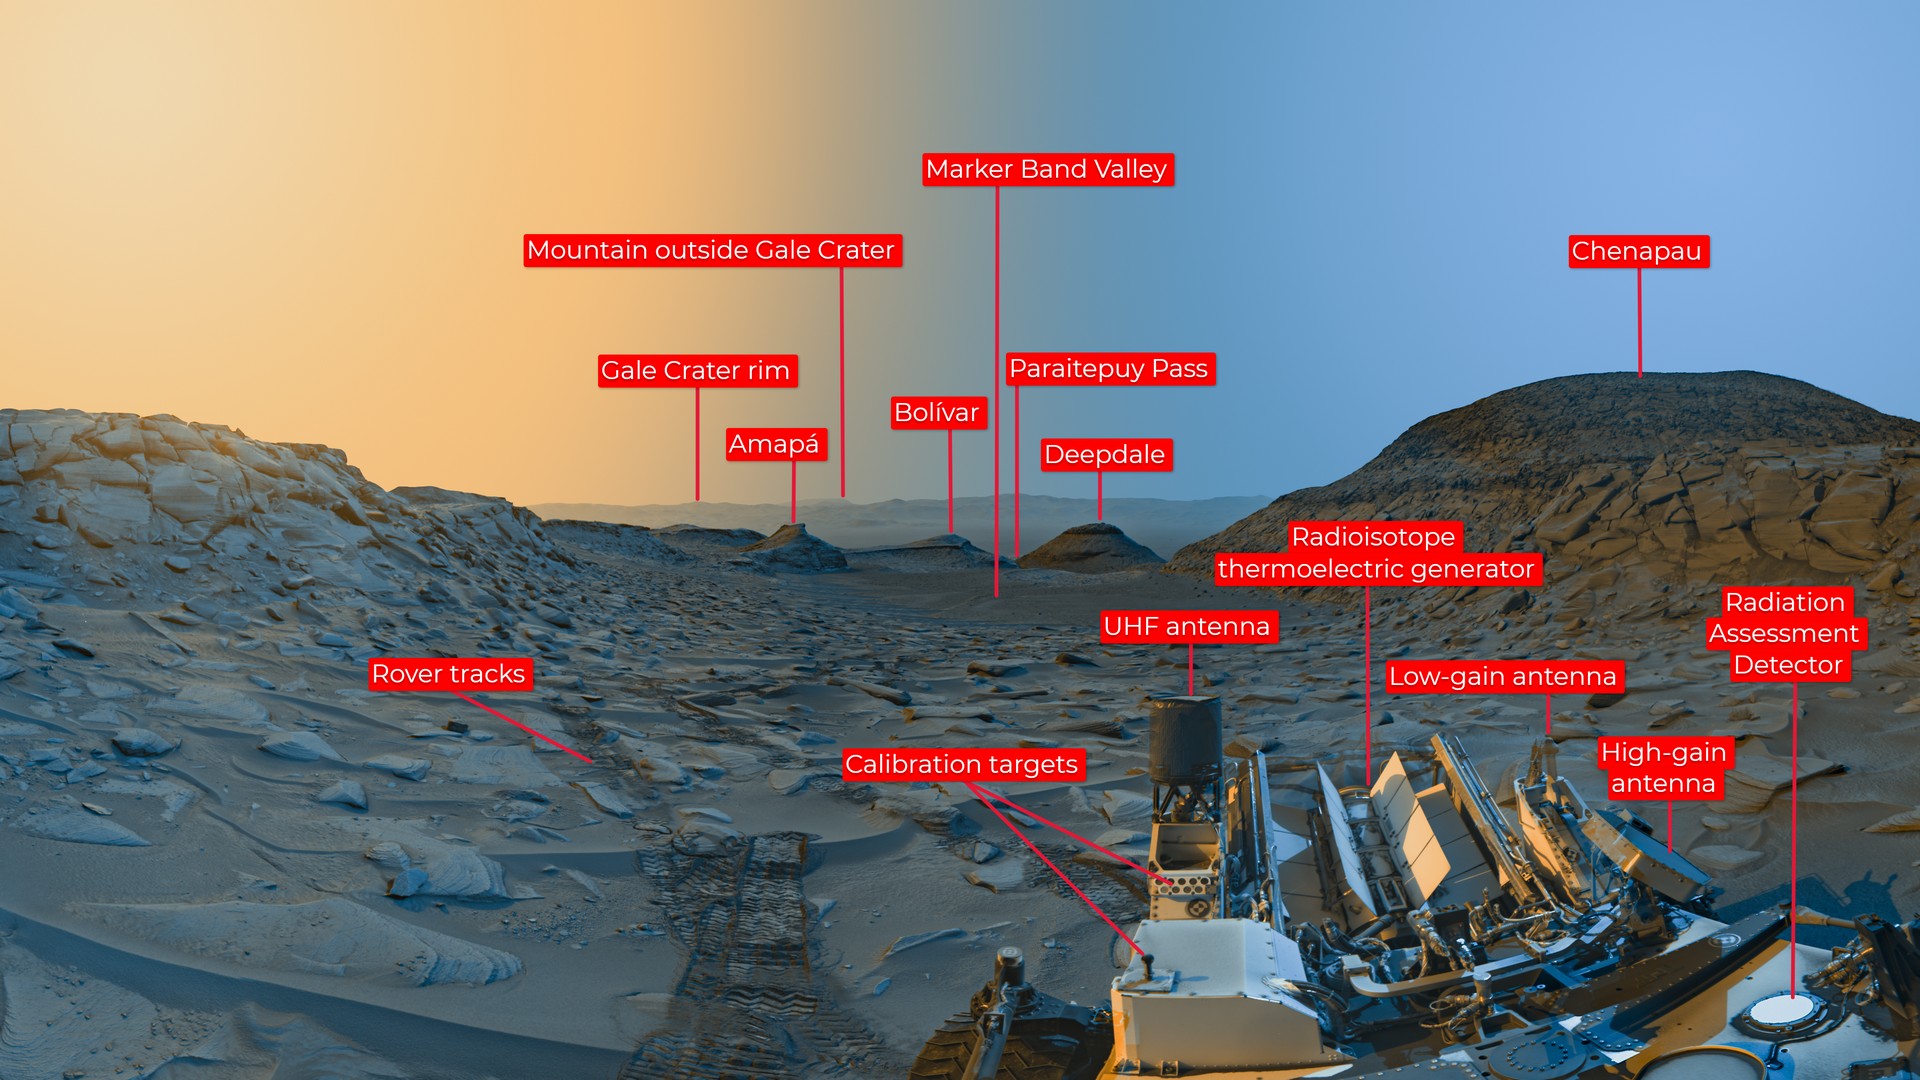 Открытка "Долины маркерных полос", сделанная Curiosity (рис. A): Марсоход НАСА Curiosity использовал свои черно-белые навигационные камеры для съемки панорам в два времени суток 8 апреля 2023 года. Рисунок A представляет собой аннотированную версию открытки, на которой отмечены географические особенности и элементы марсохода.